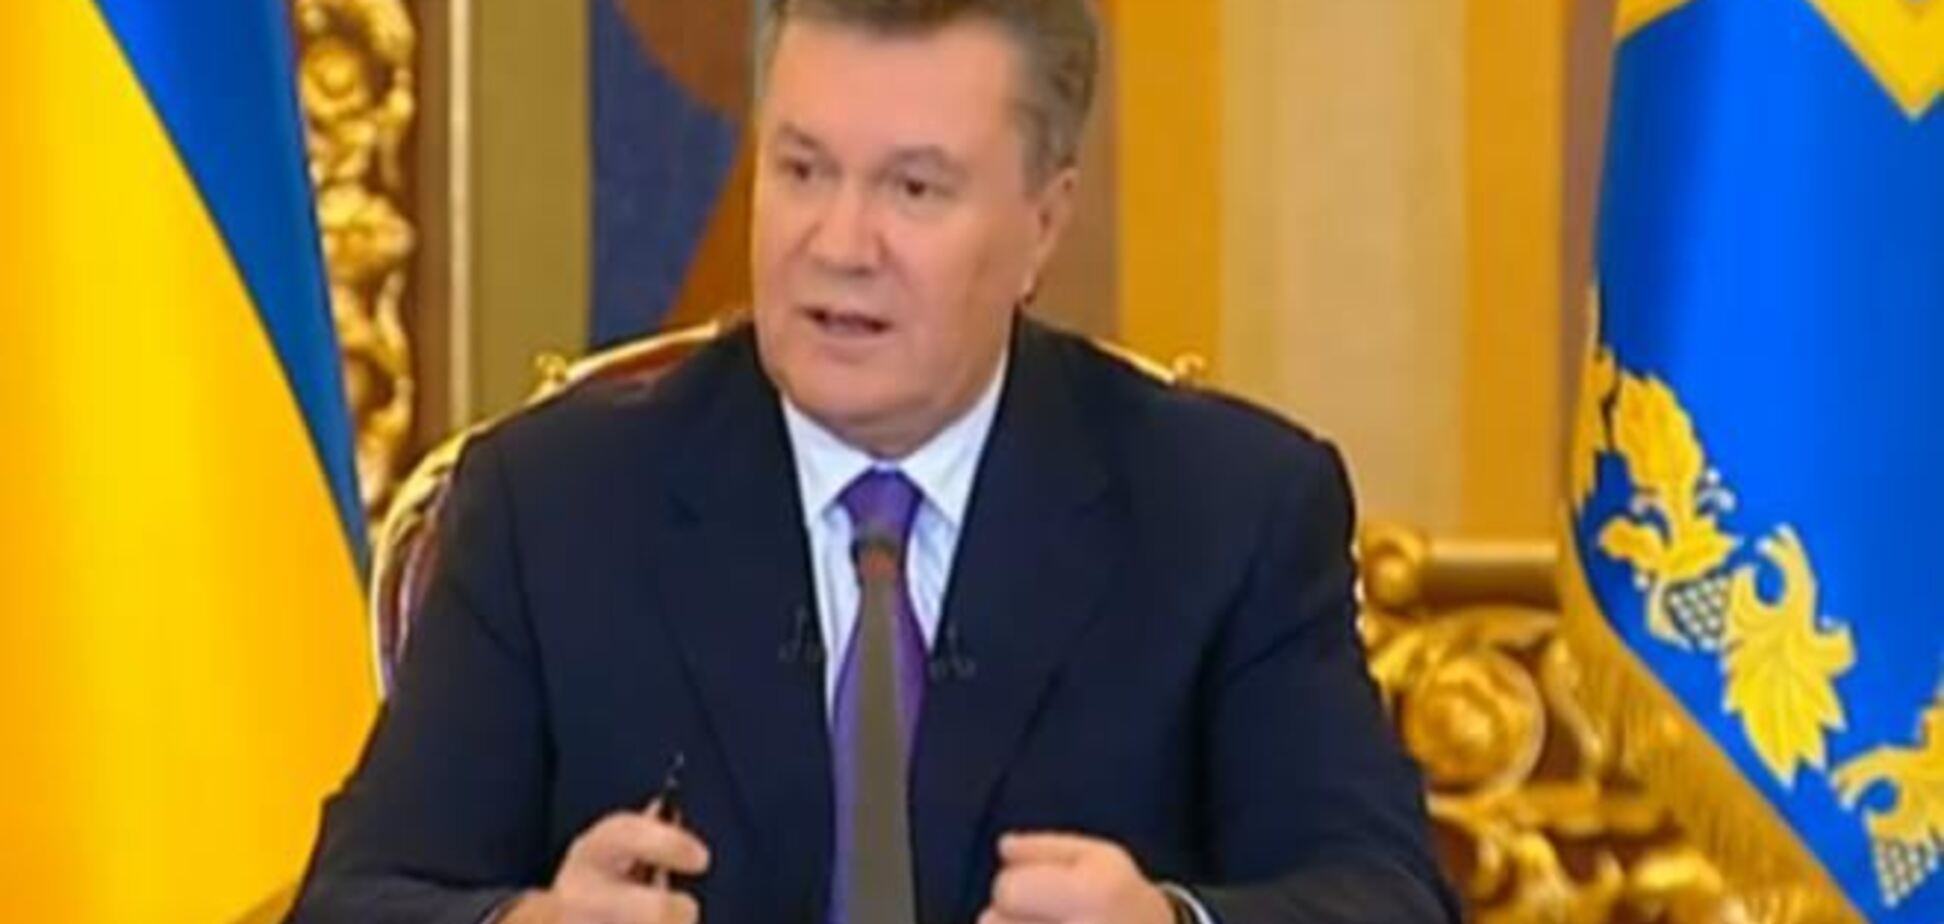 Експерт назвав прес-конференцію Януковича товариським матчем між Президентом та ЗМІ